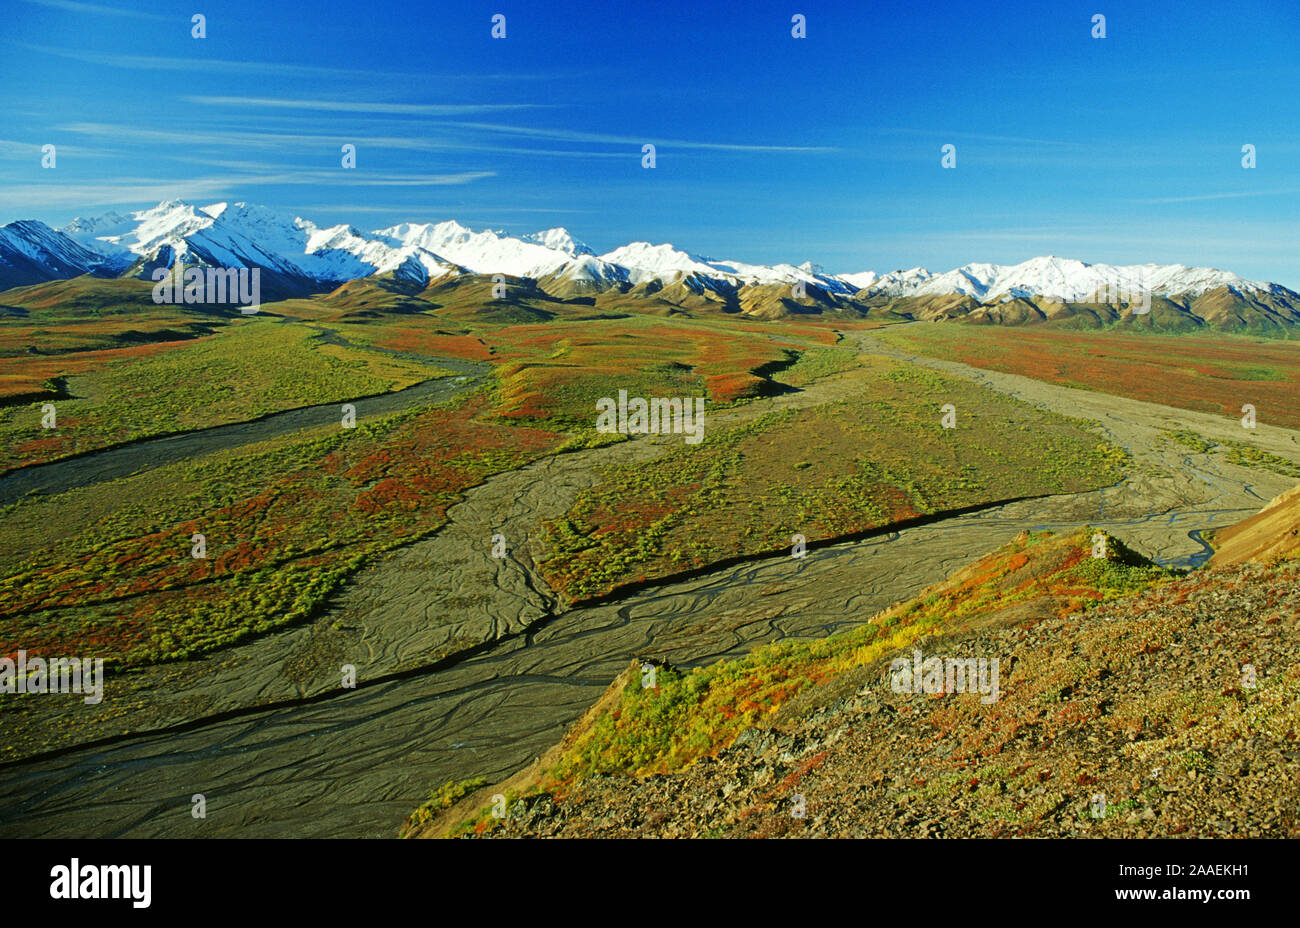 Die Berge der Alaska Range mit der farbigen Herbsttundra im Vordergrund - Denali N.P. - Alaska Stock Photo